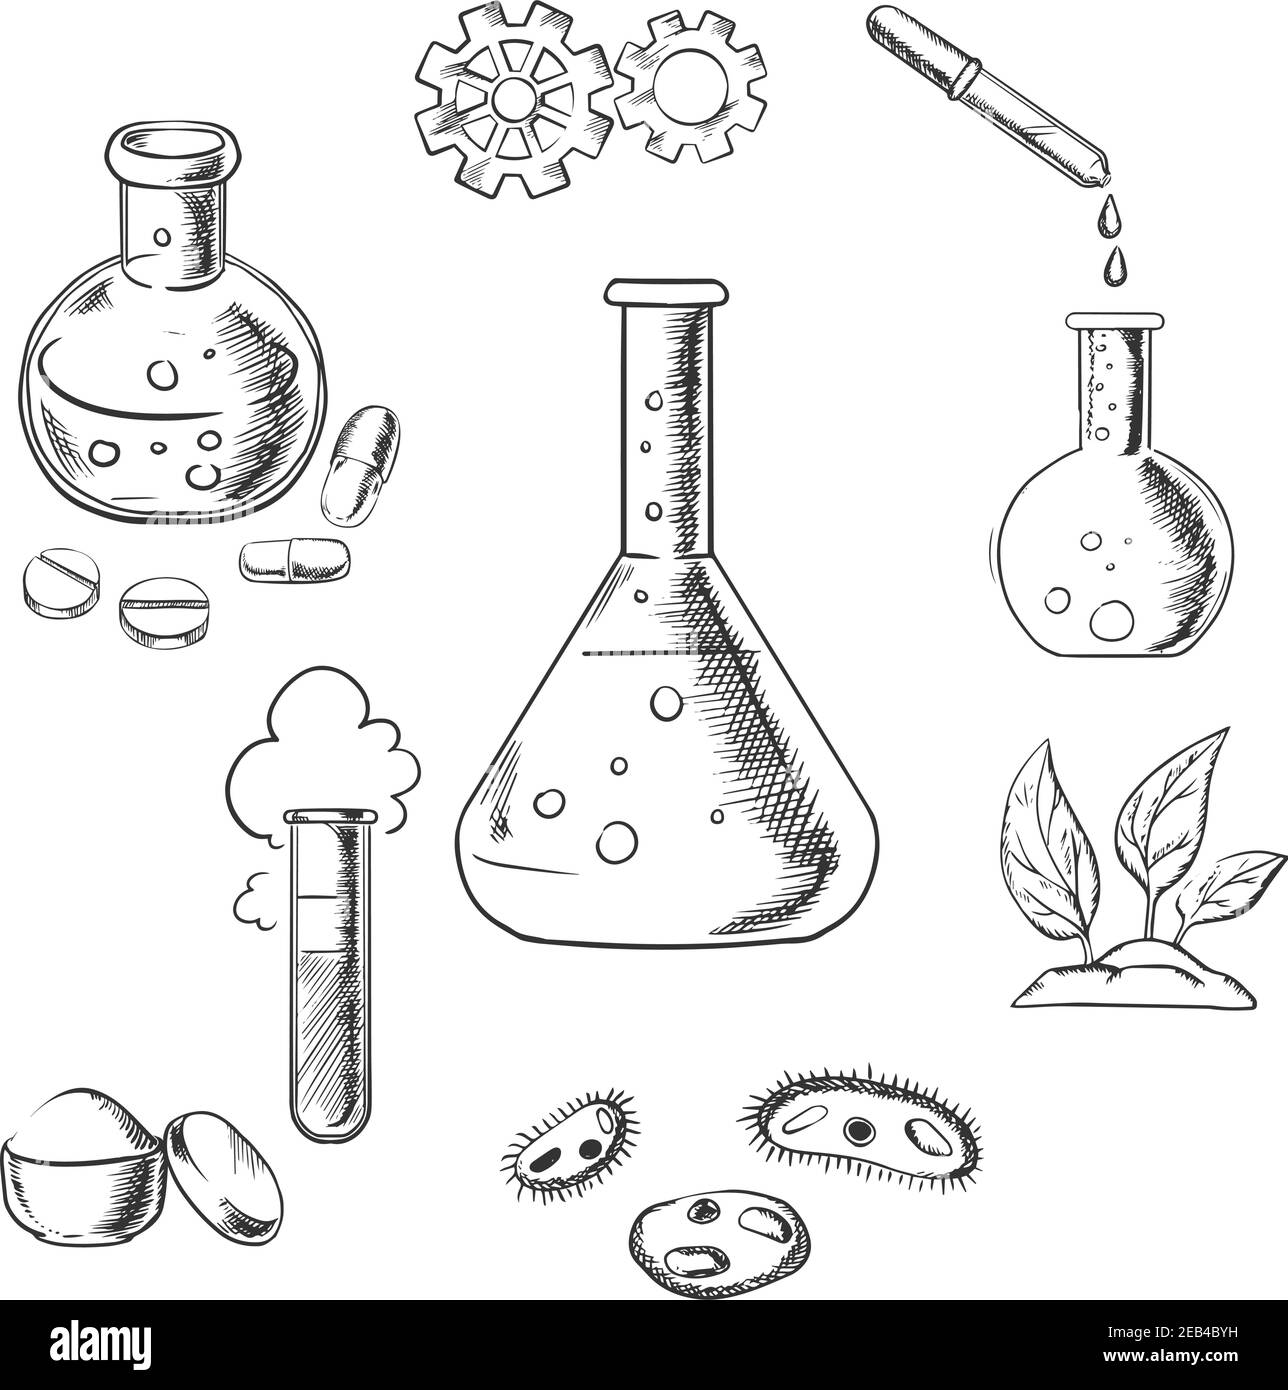 Expérience et conception scientifique avec un nuage de vapeur avec roues dentées au-dessus d'un flacon conique avec verrerie supplémentaire pour l'industrie pharmaceutique, chimique, Illustration de Vecteur